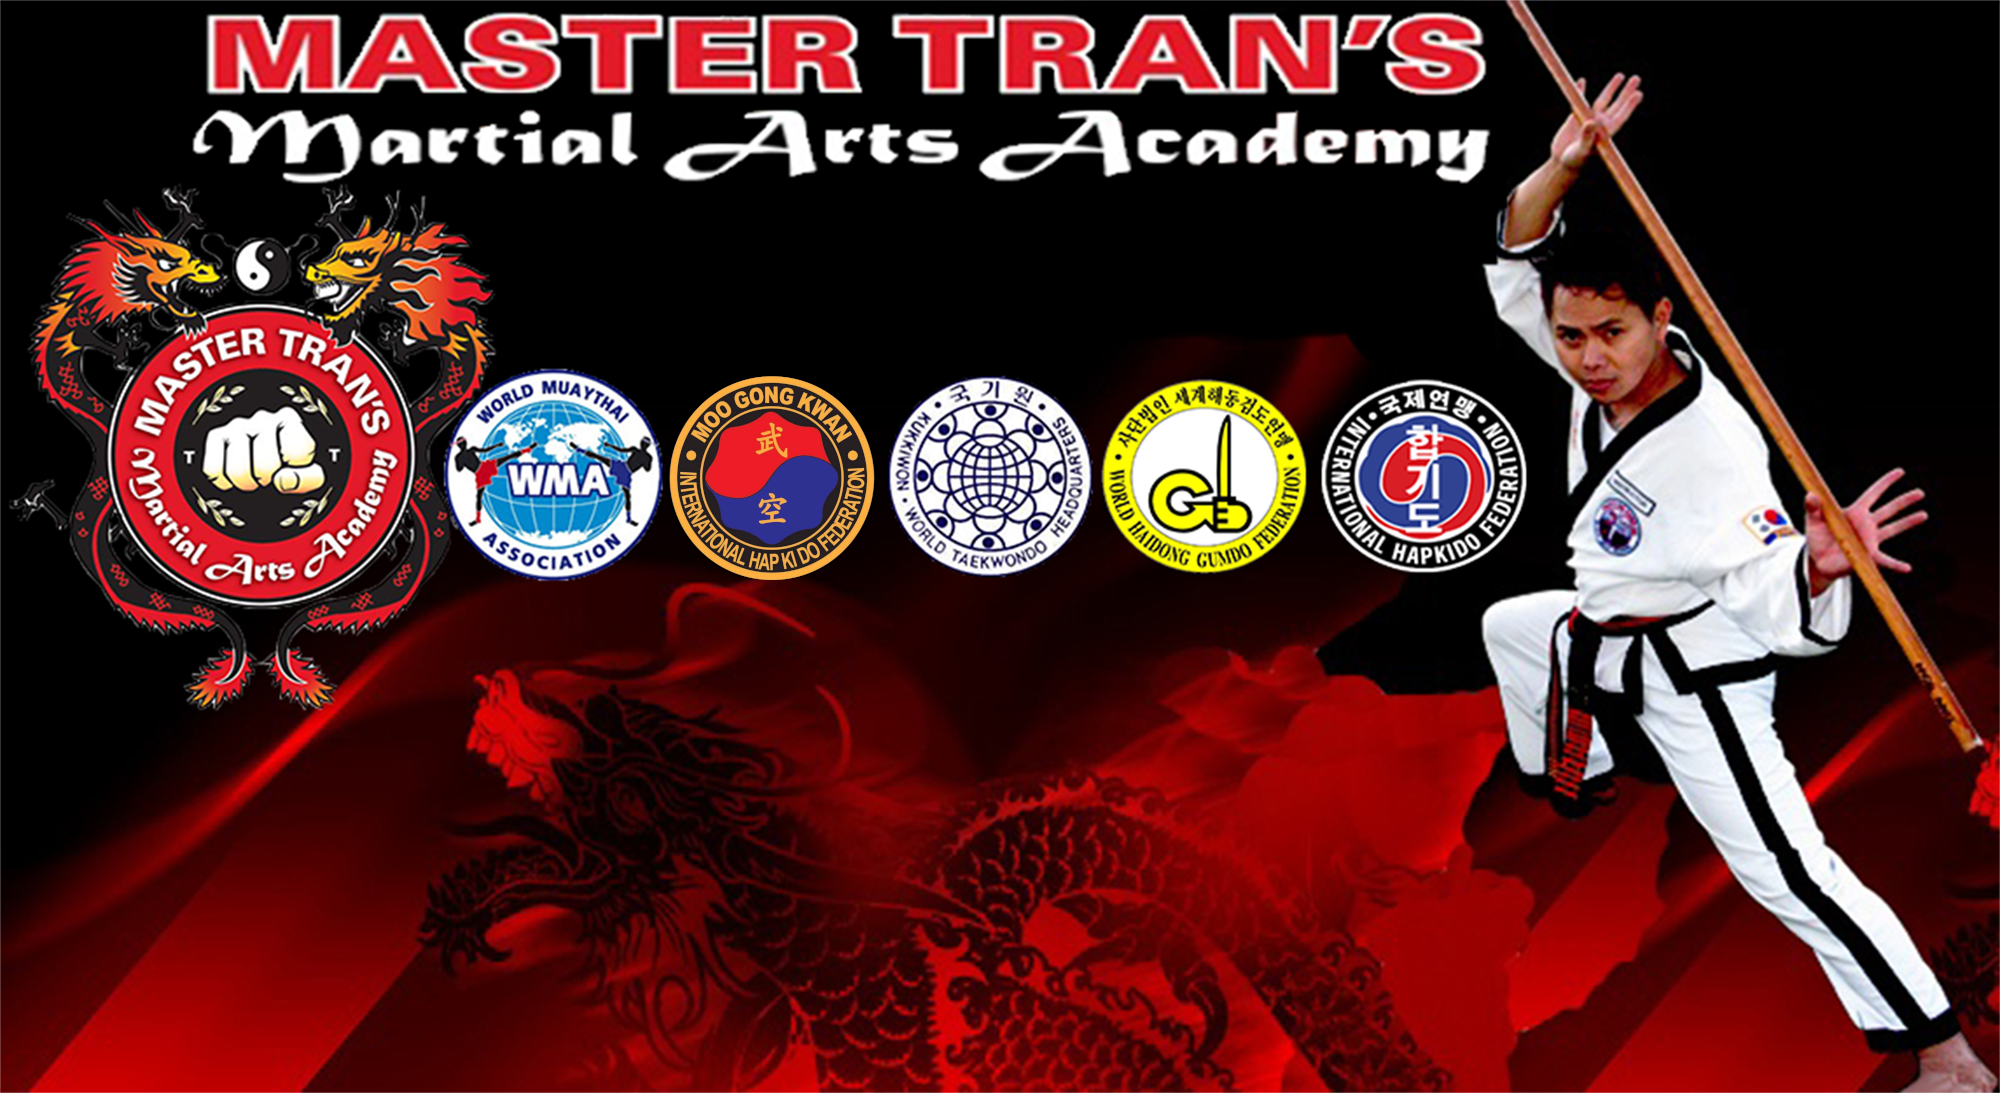 Master Tran's Martial Arts Academy